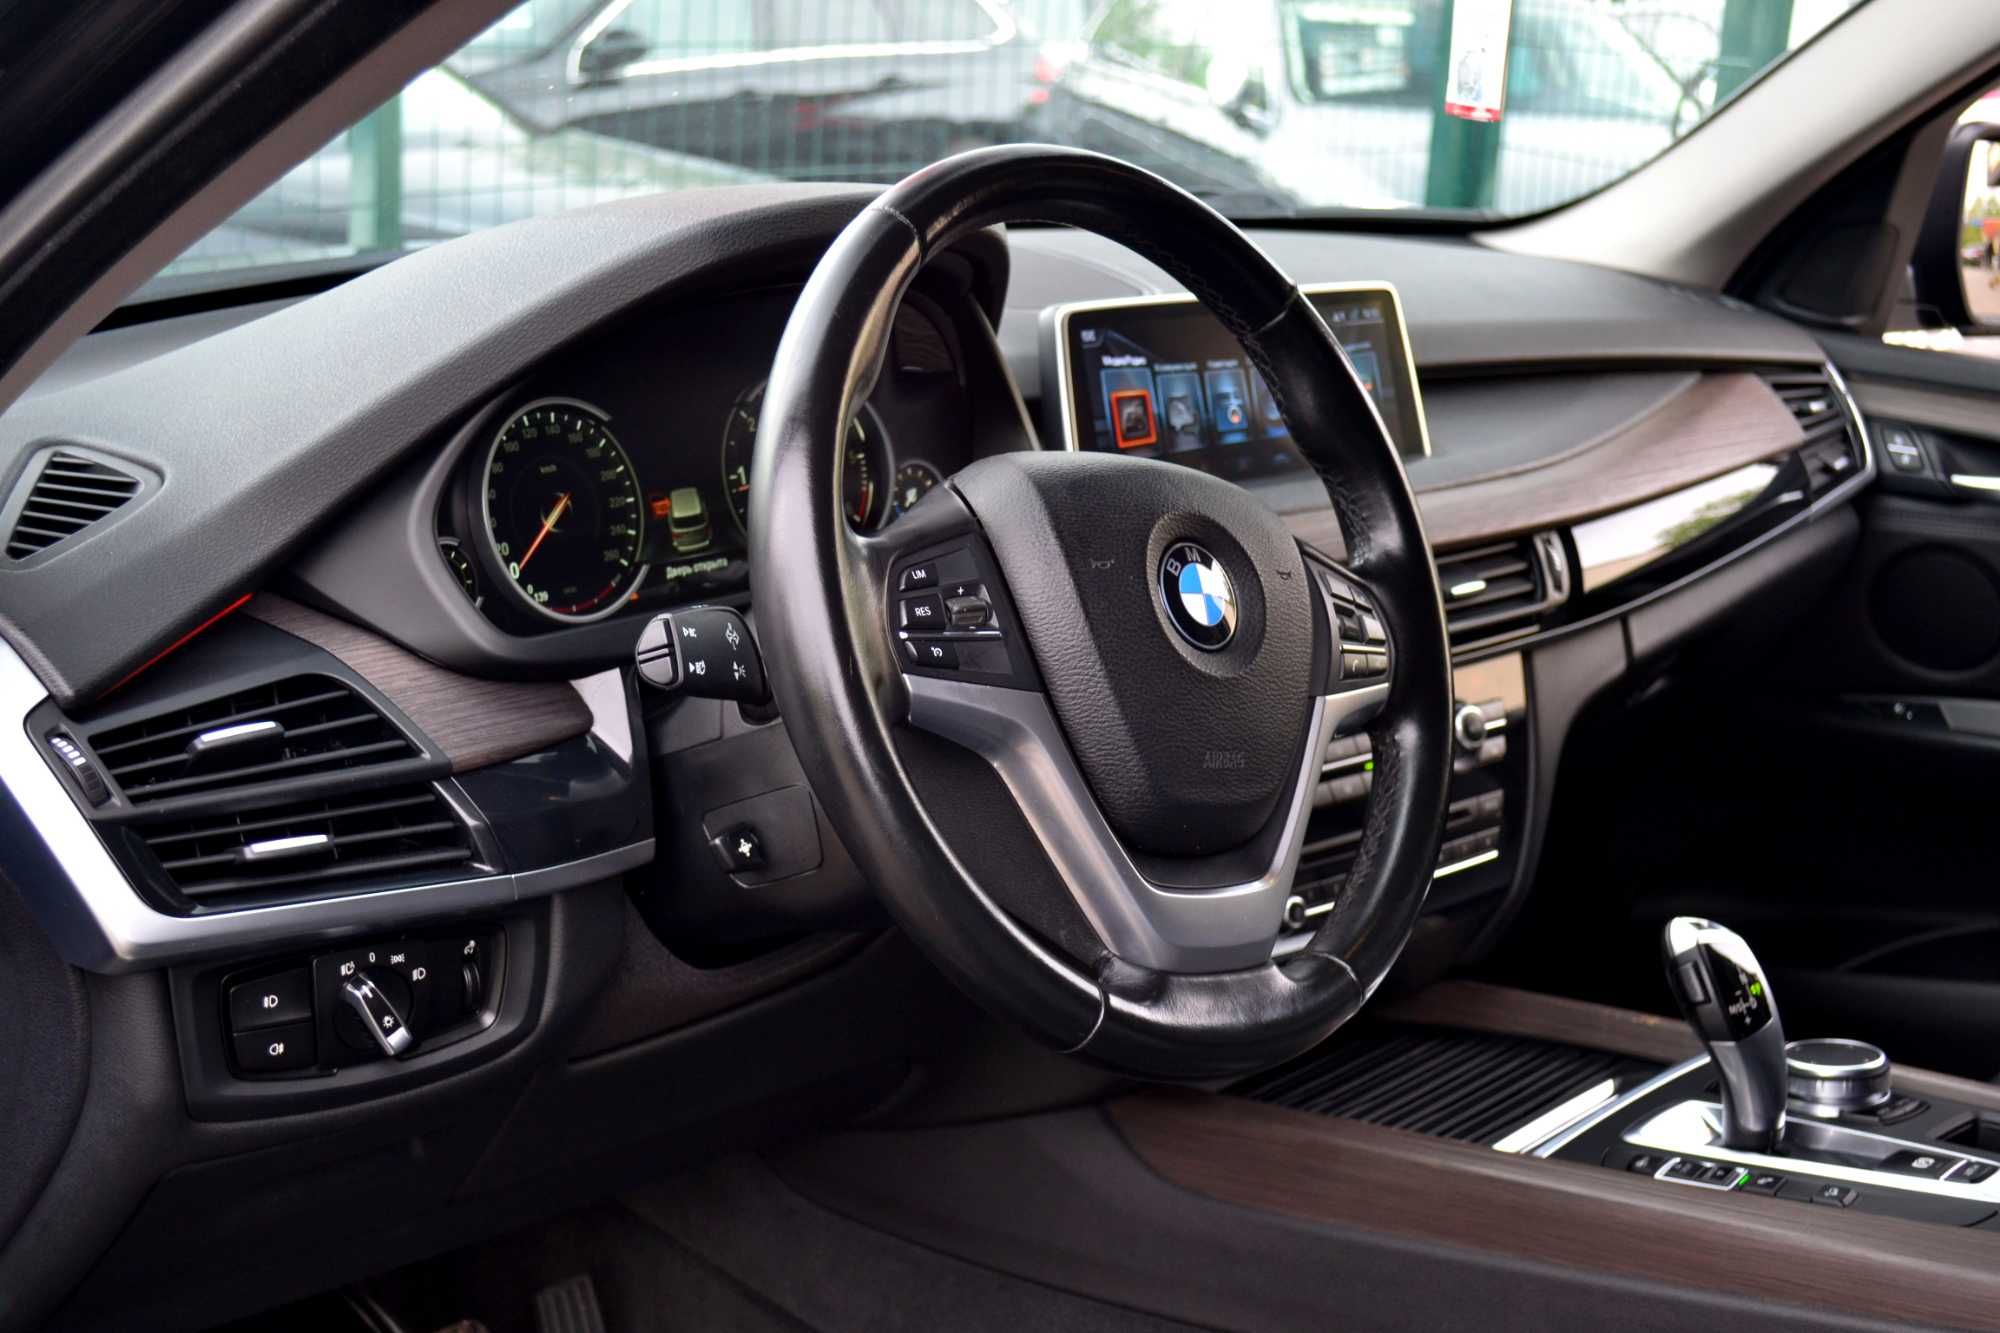 BMW X5 2016 F15 5d Steptronic (231 к.с.) xDrive